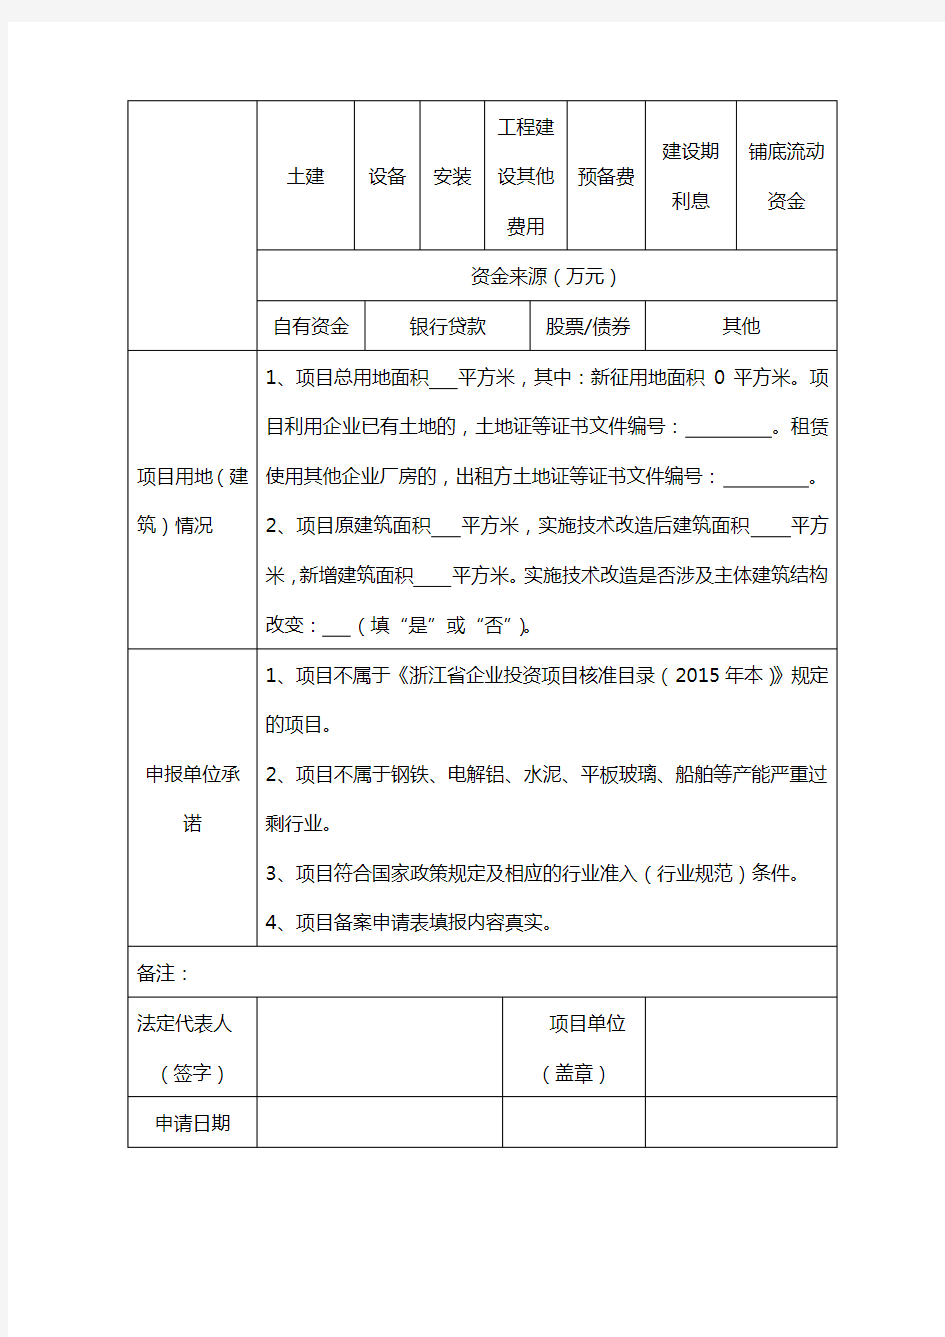 浙江工业企业零土地技术改造项目备案申请表